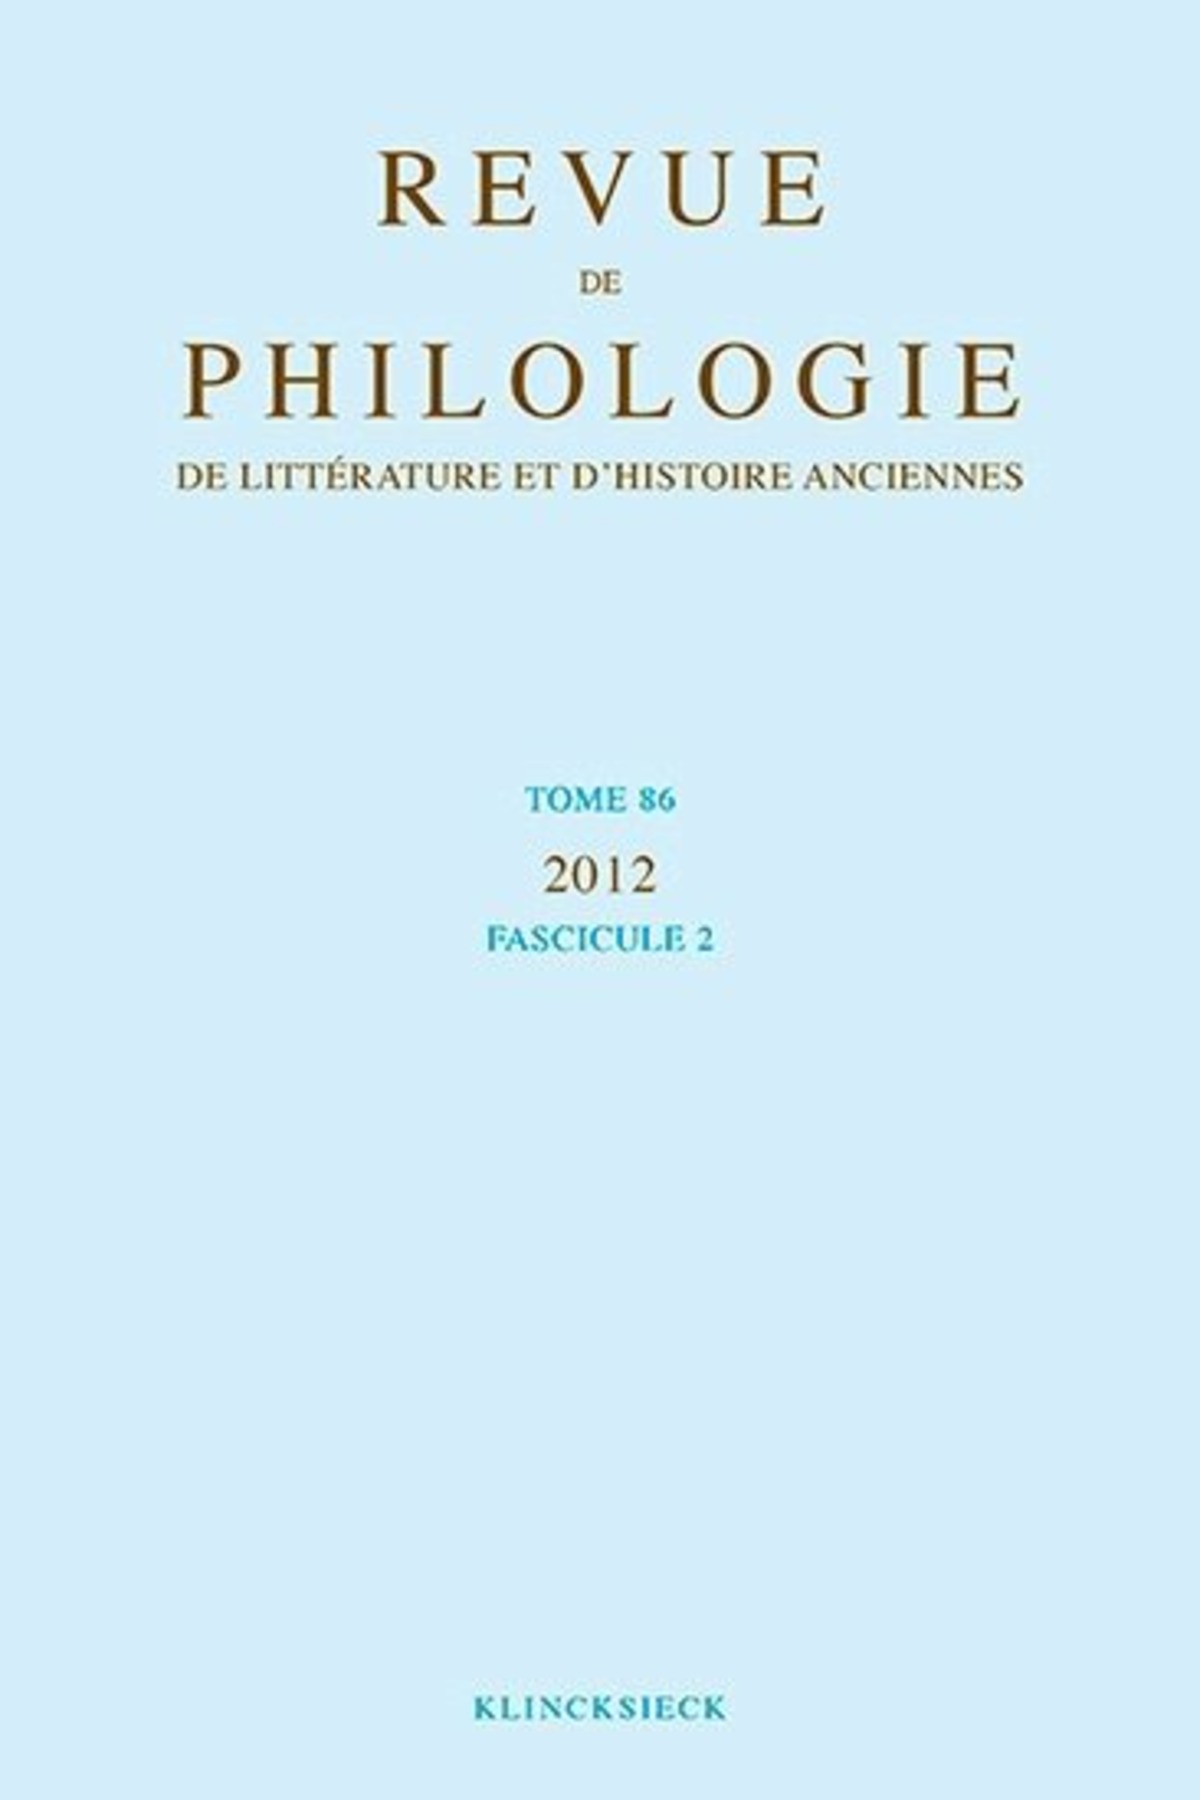 Revue de philologie, de littérature et d'histoire anciennes volume 86